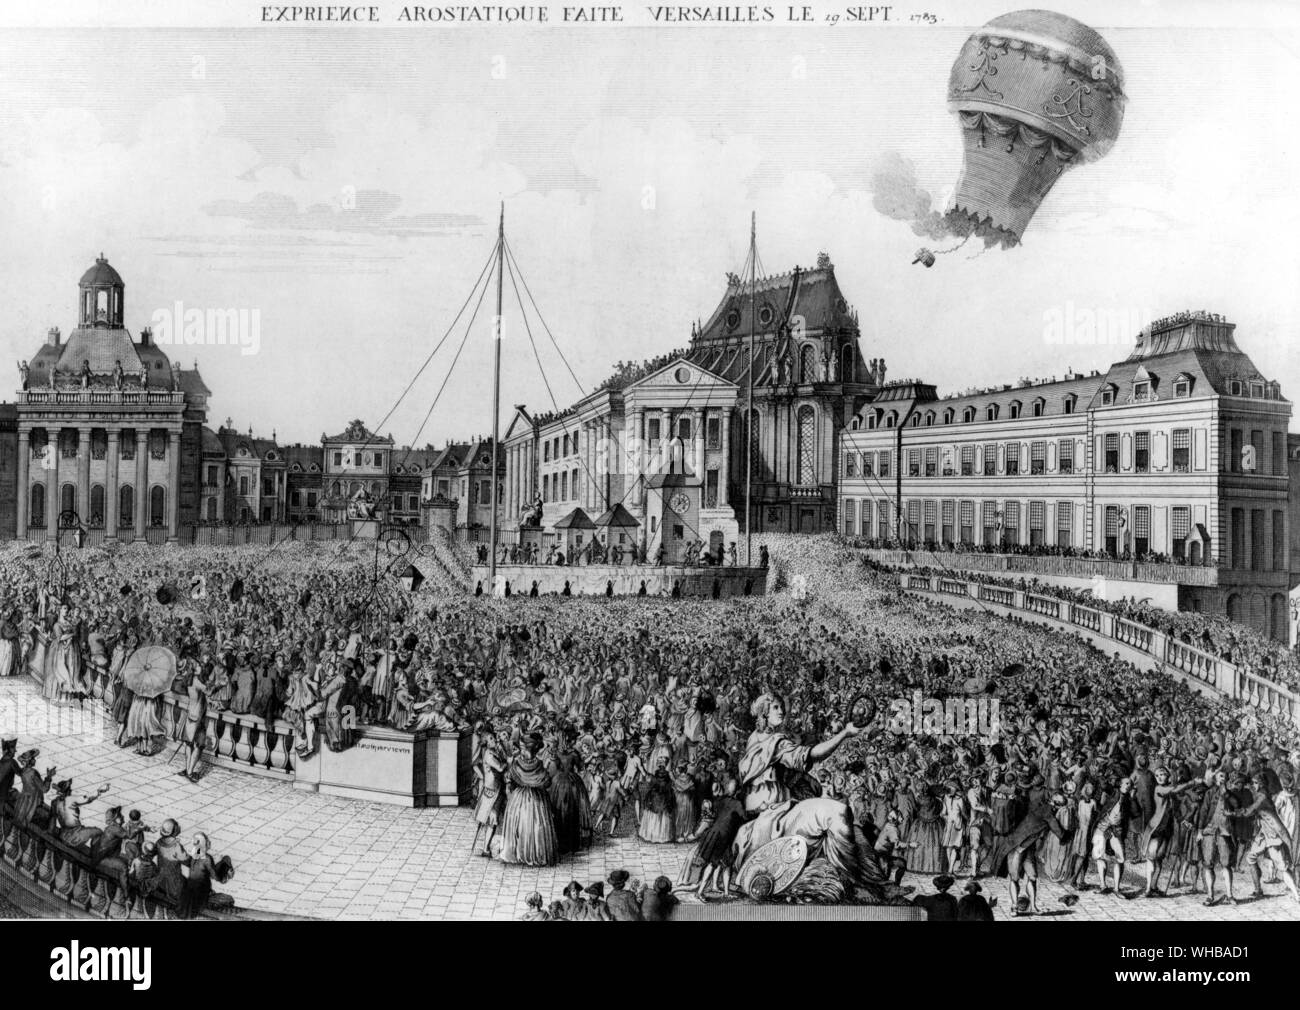 Versailles: Erfahrung Aerostatique - Zeigt den Ballon Durchführung der Tiere über den überfüllten Platz steigen. 19. September 1783 Stockfoto